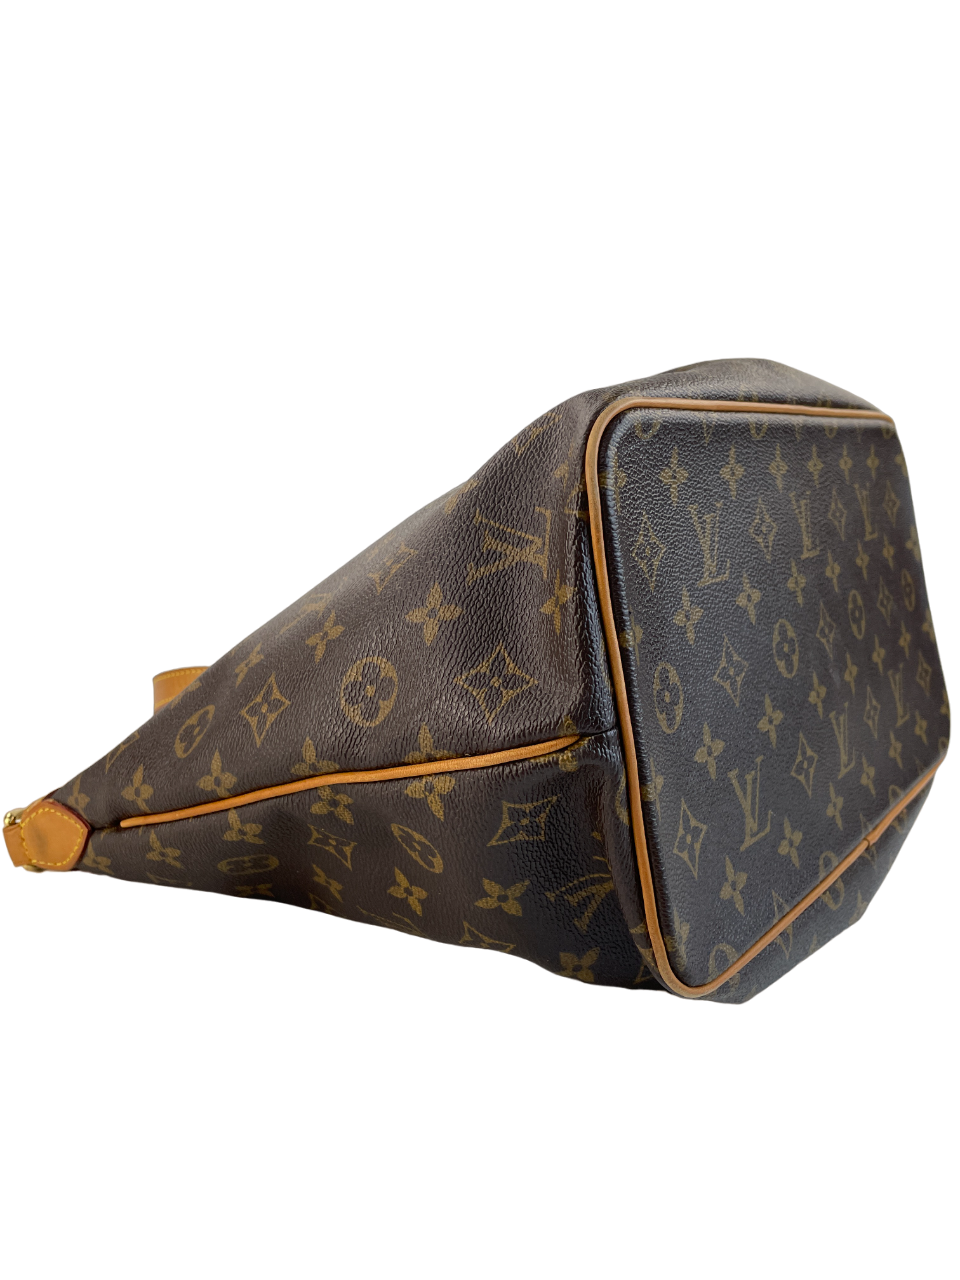 Preloved Louis Vuitton Monogram e Messenger Bag TH0059 092623 –  KimmieBBags LLC